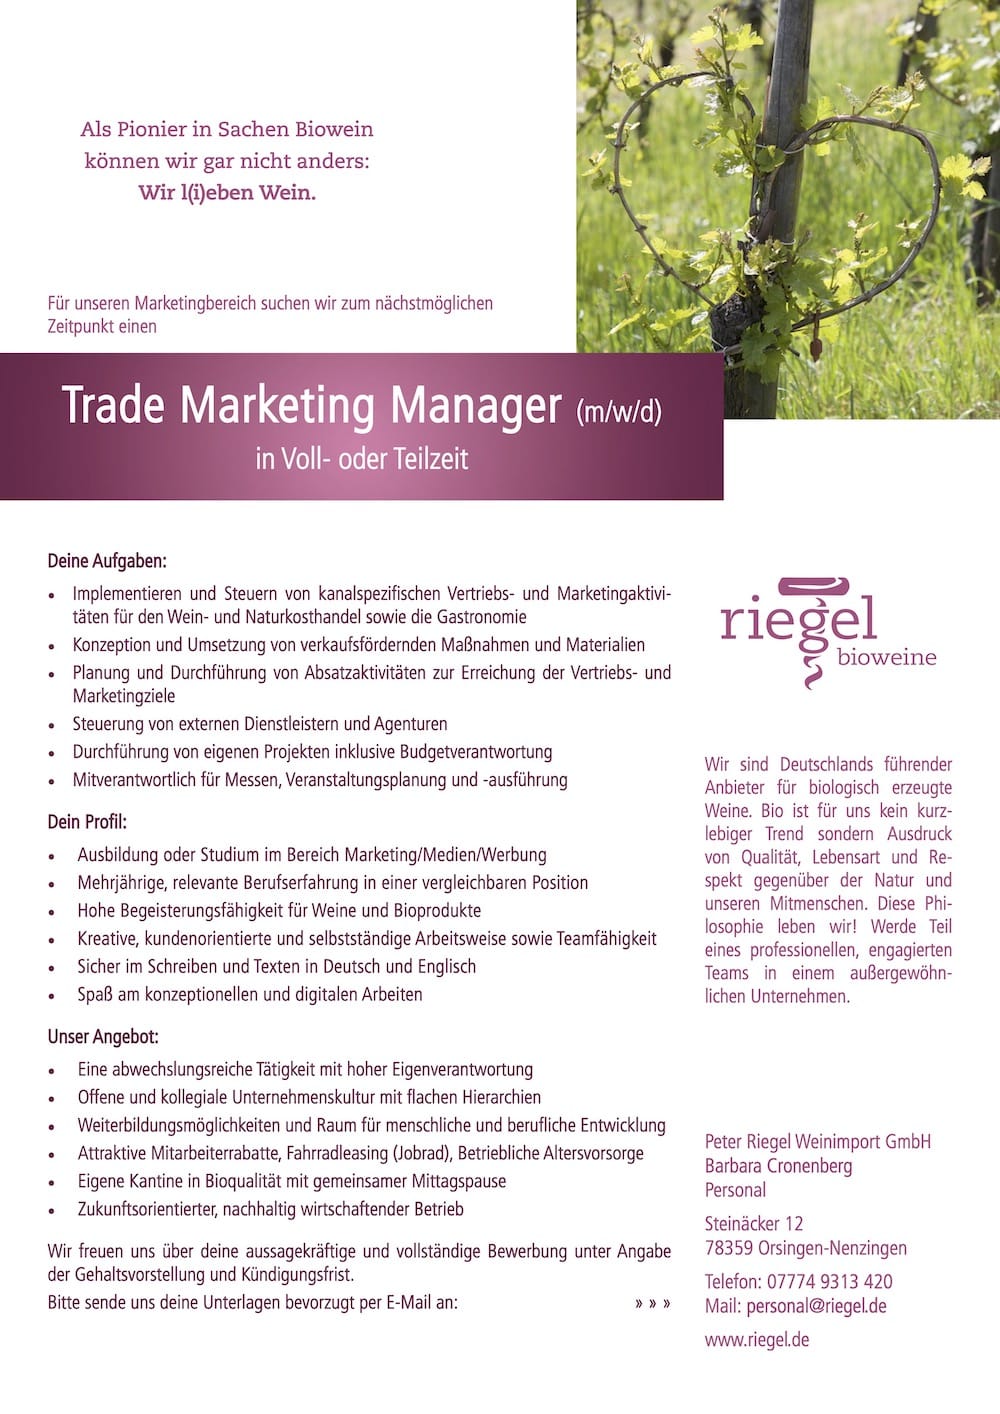 Trade Marketing Manager (m/w/d) in Voll- oder Teilzeit